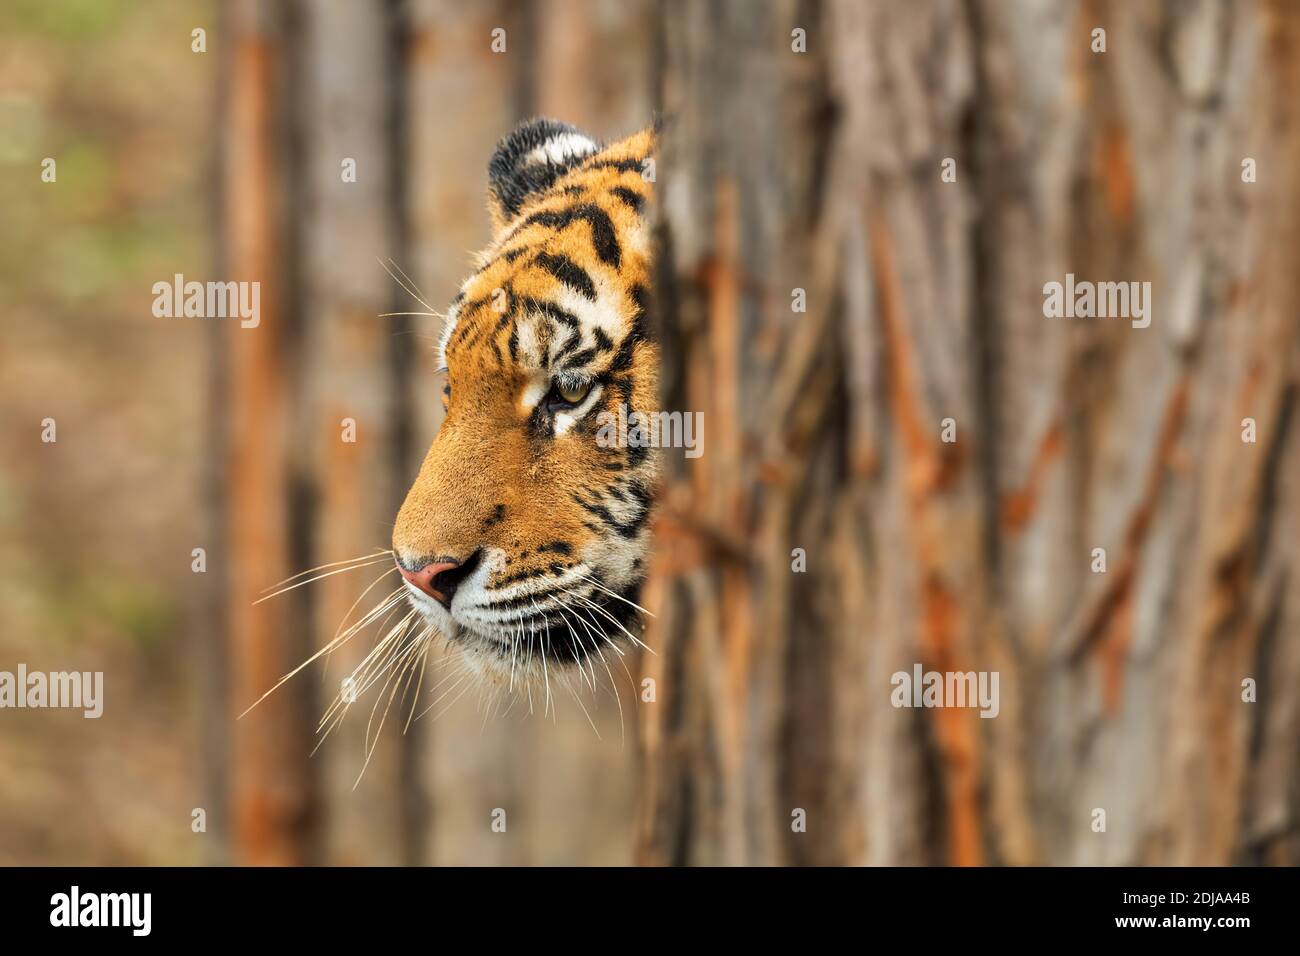 Tigre de Sibérie - Panthera tigris, beau grand chat des forêts et des bois asiatiques, Russie. Banque D'Images